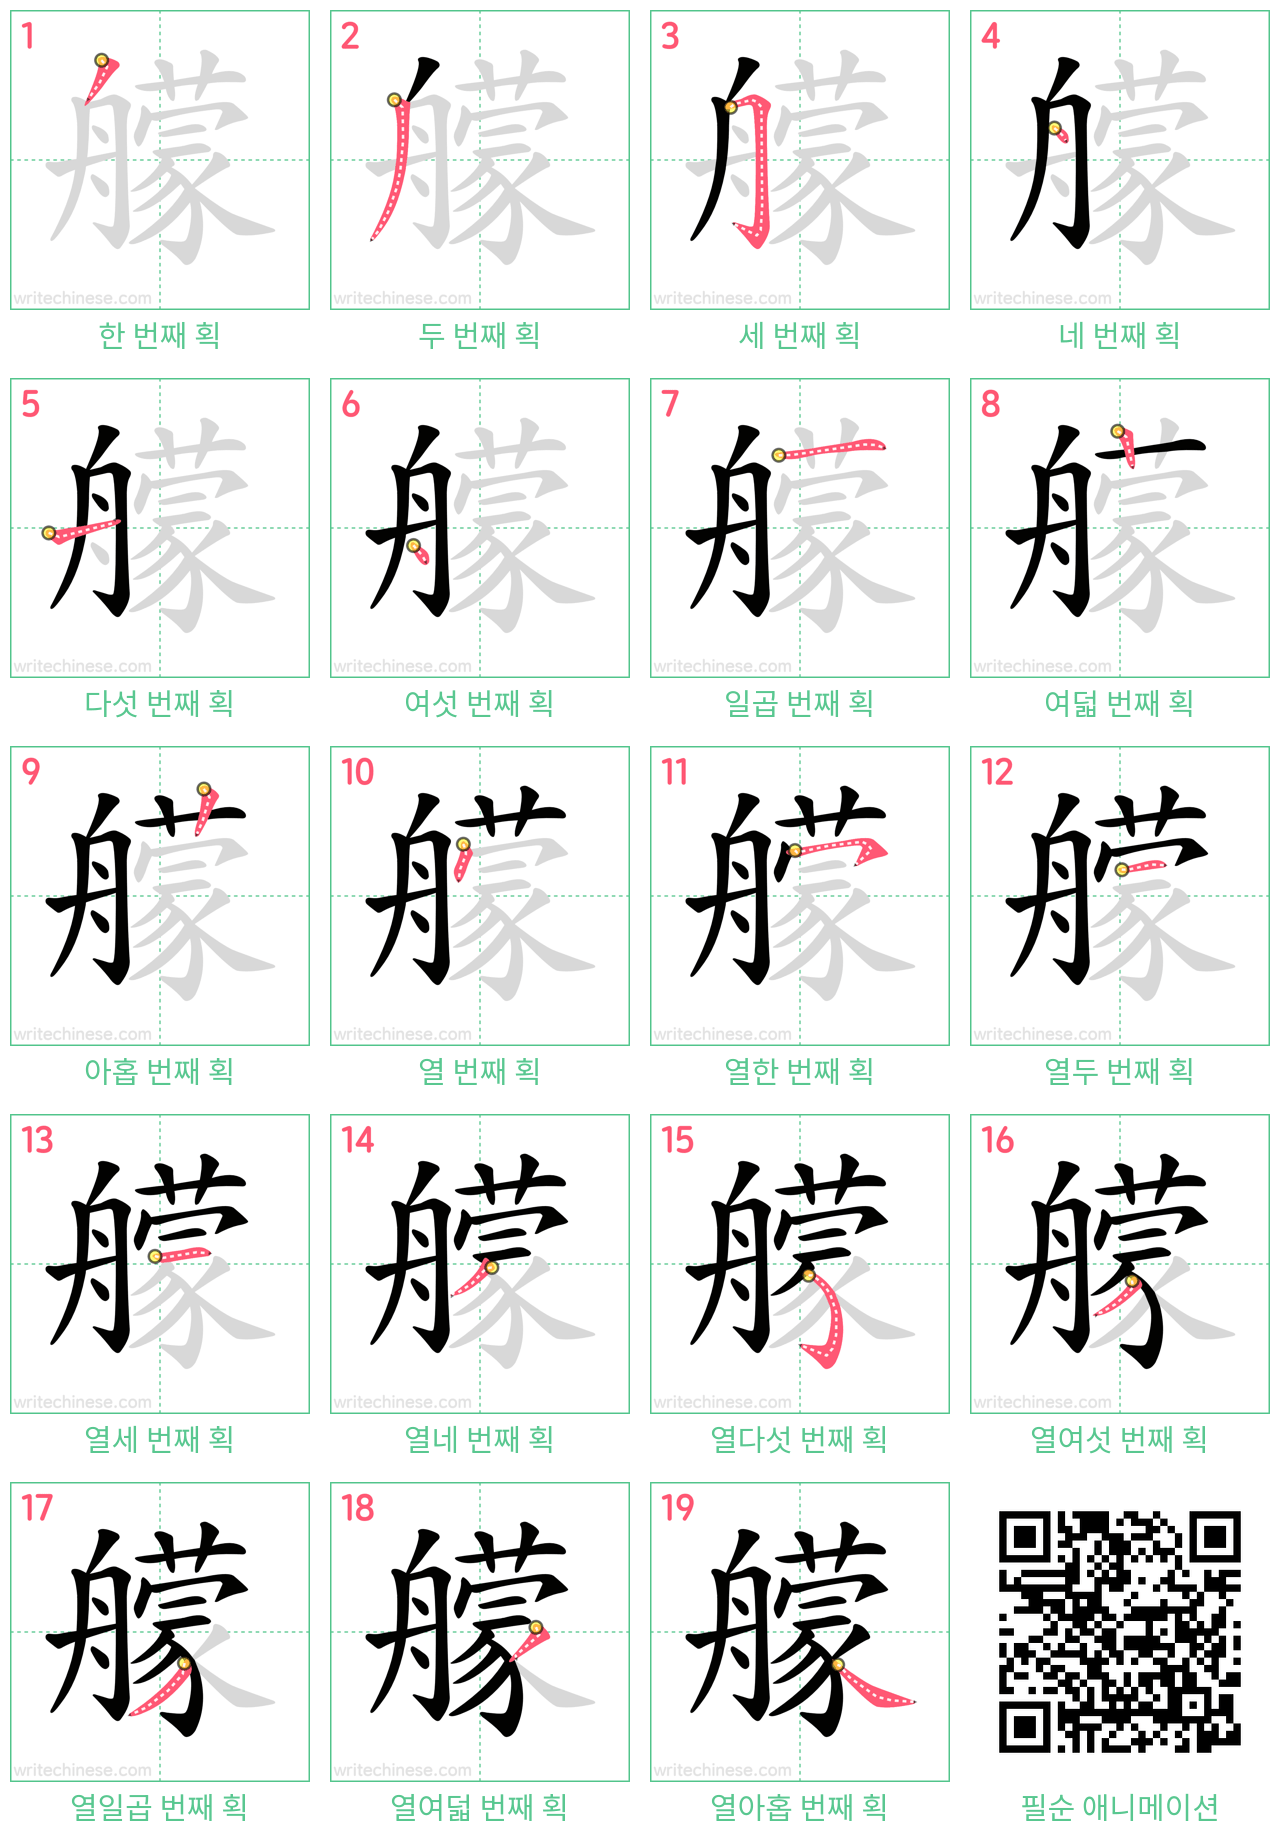 艨 step-by-step stroke order diagrams